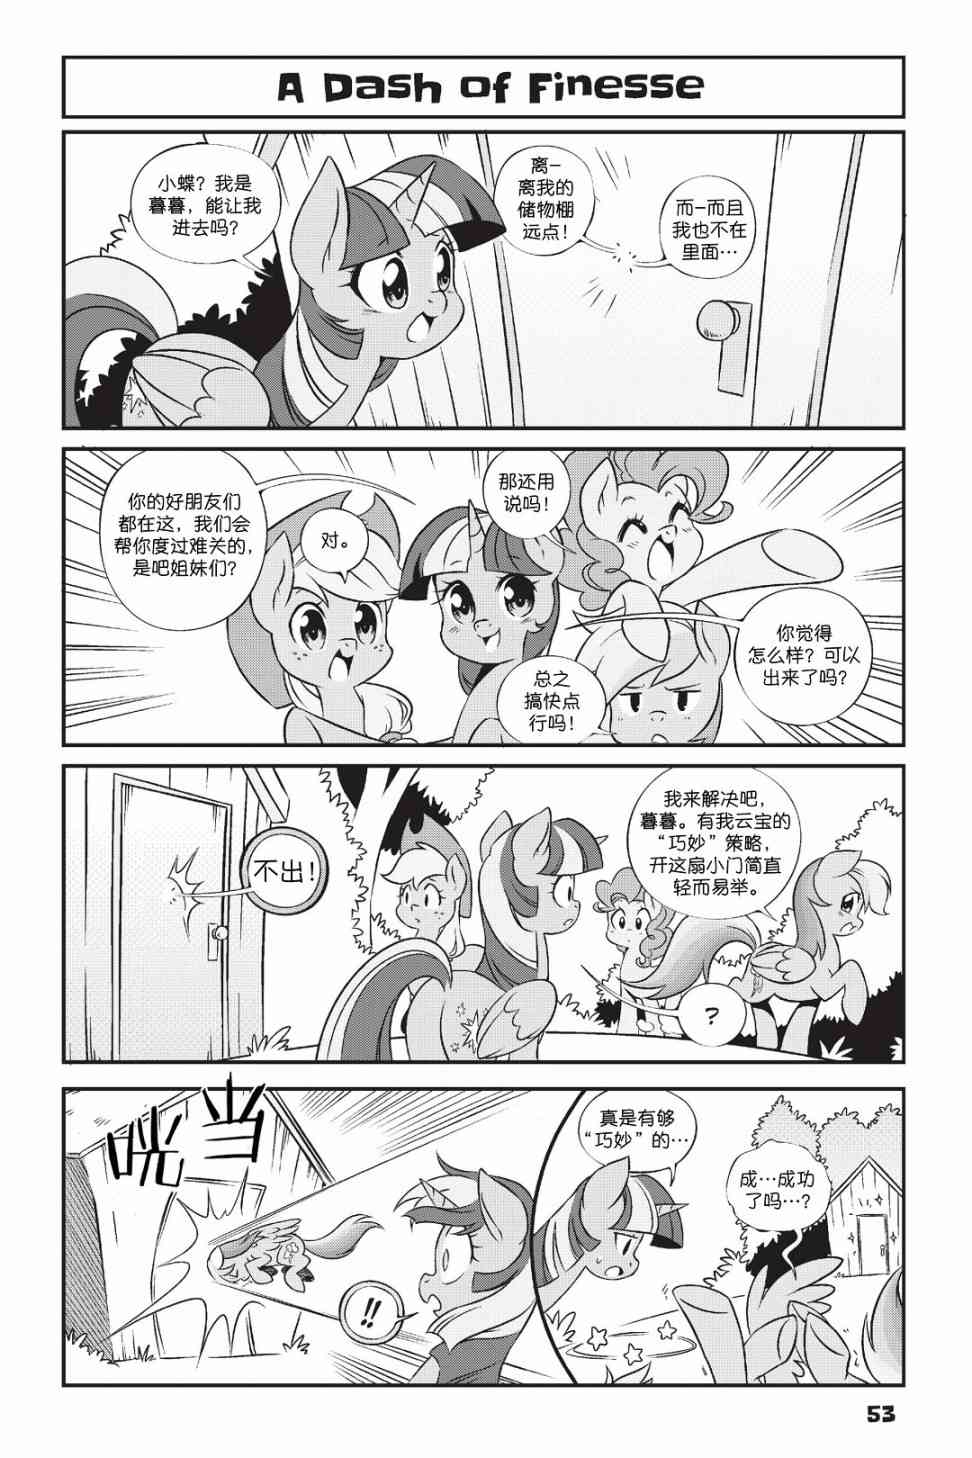 彩虹小馬G4：友情就是魔法 - 新日版漫畫第01部第04話 - 2